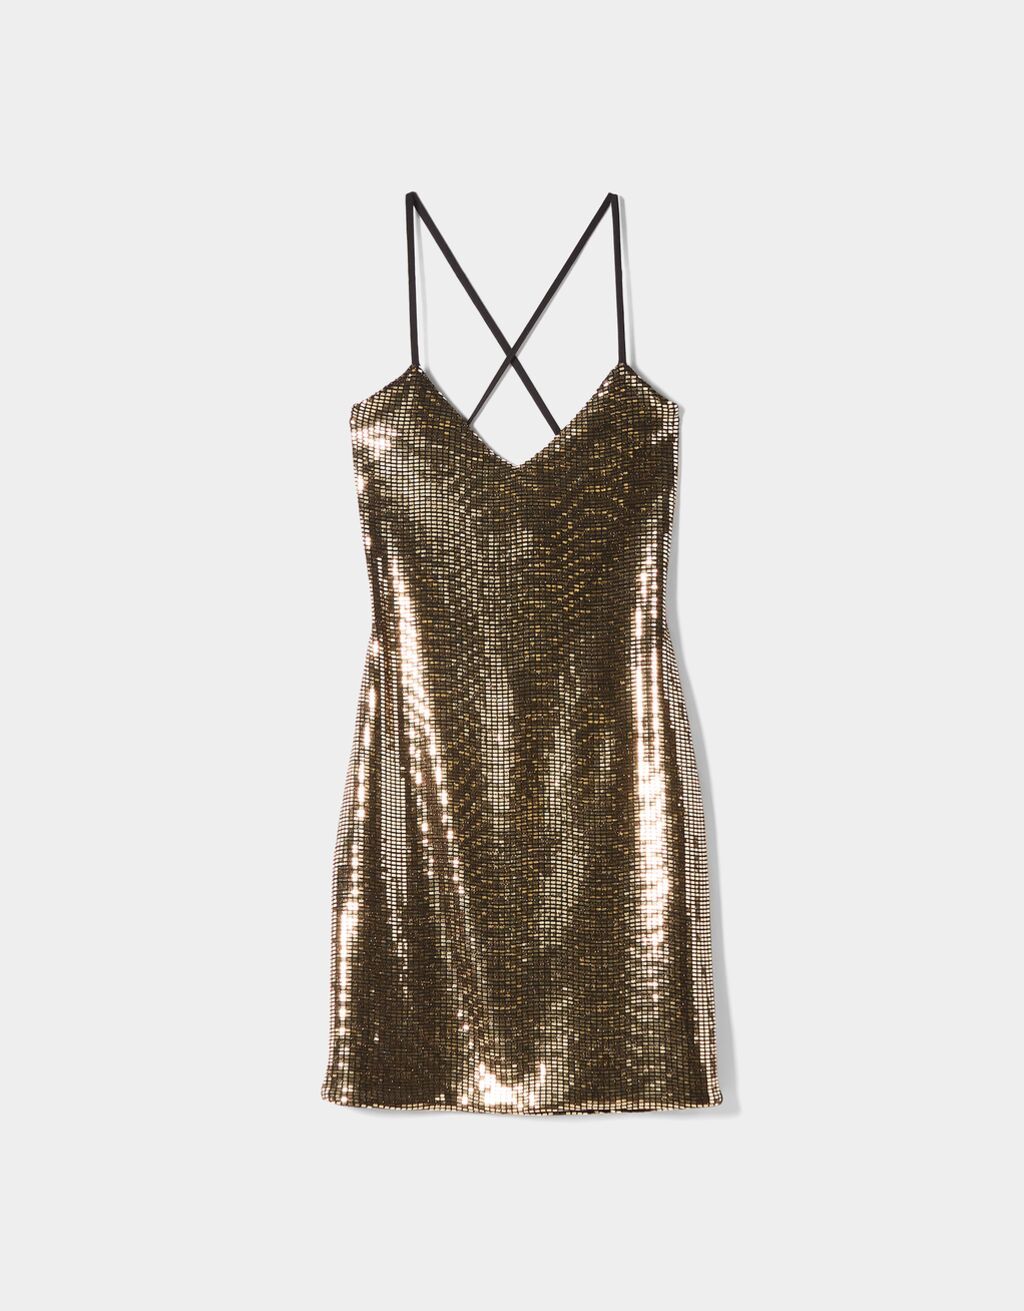 12 vestidos Nochevieja 2022 a buen precio de Zara, Bershka o Mango | Moda